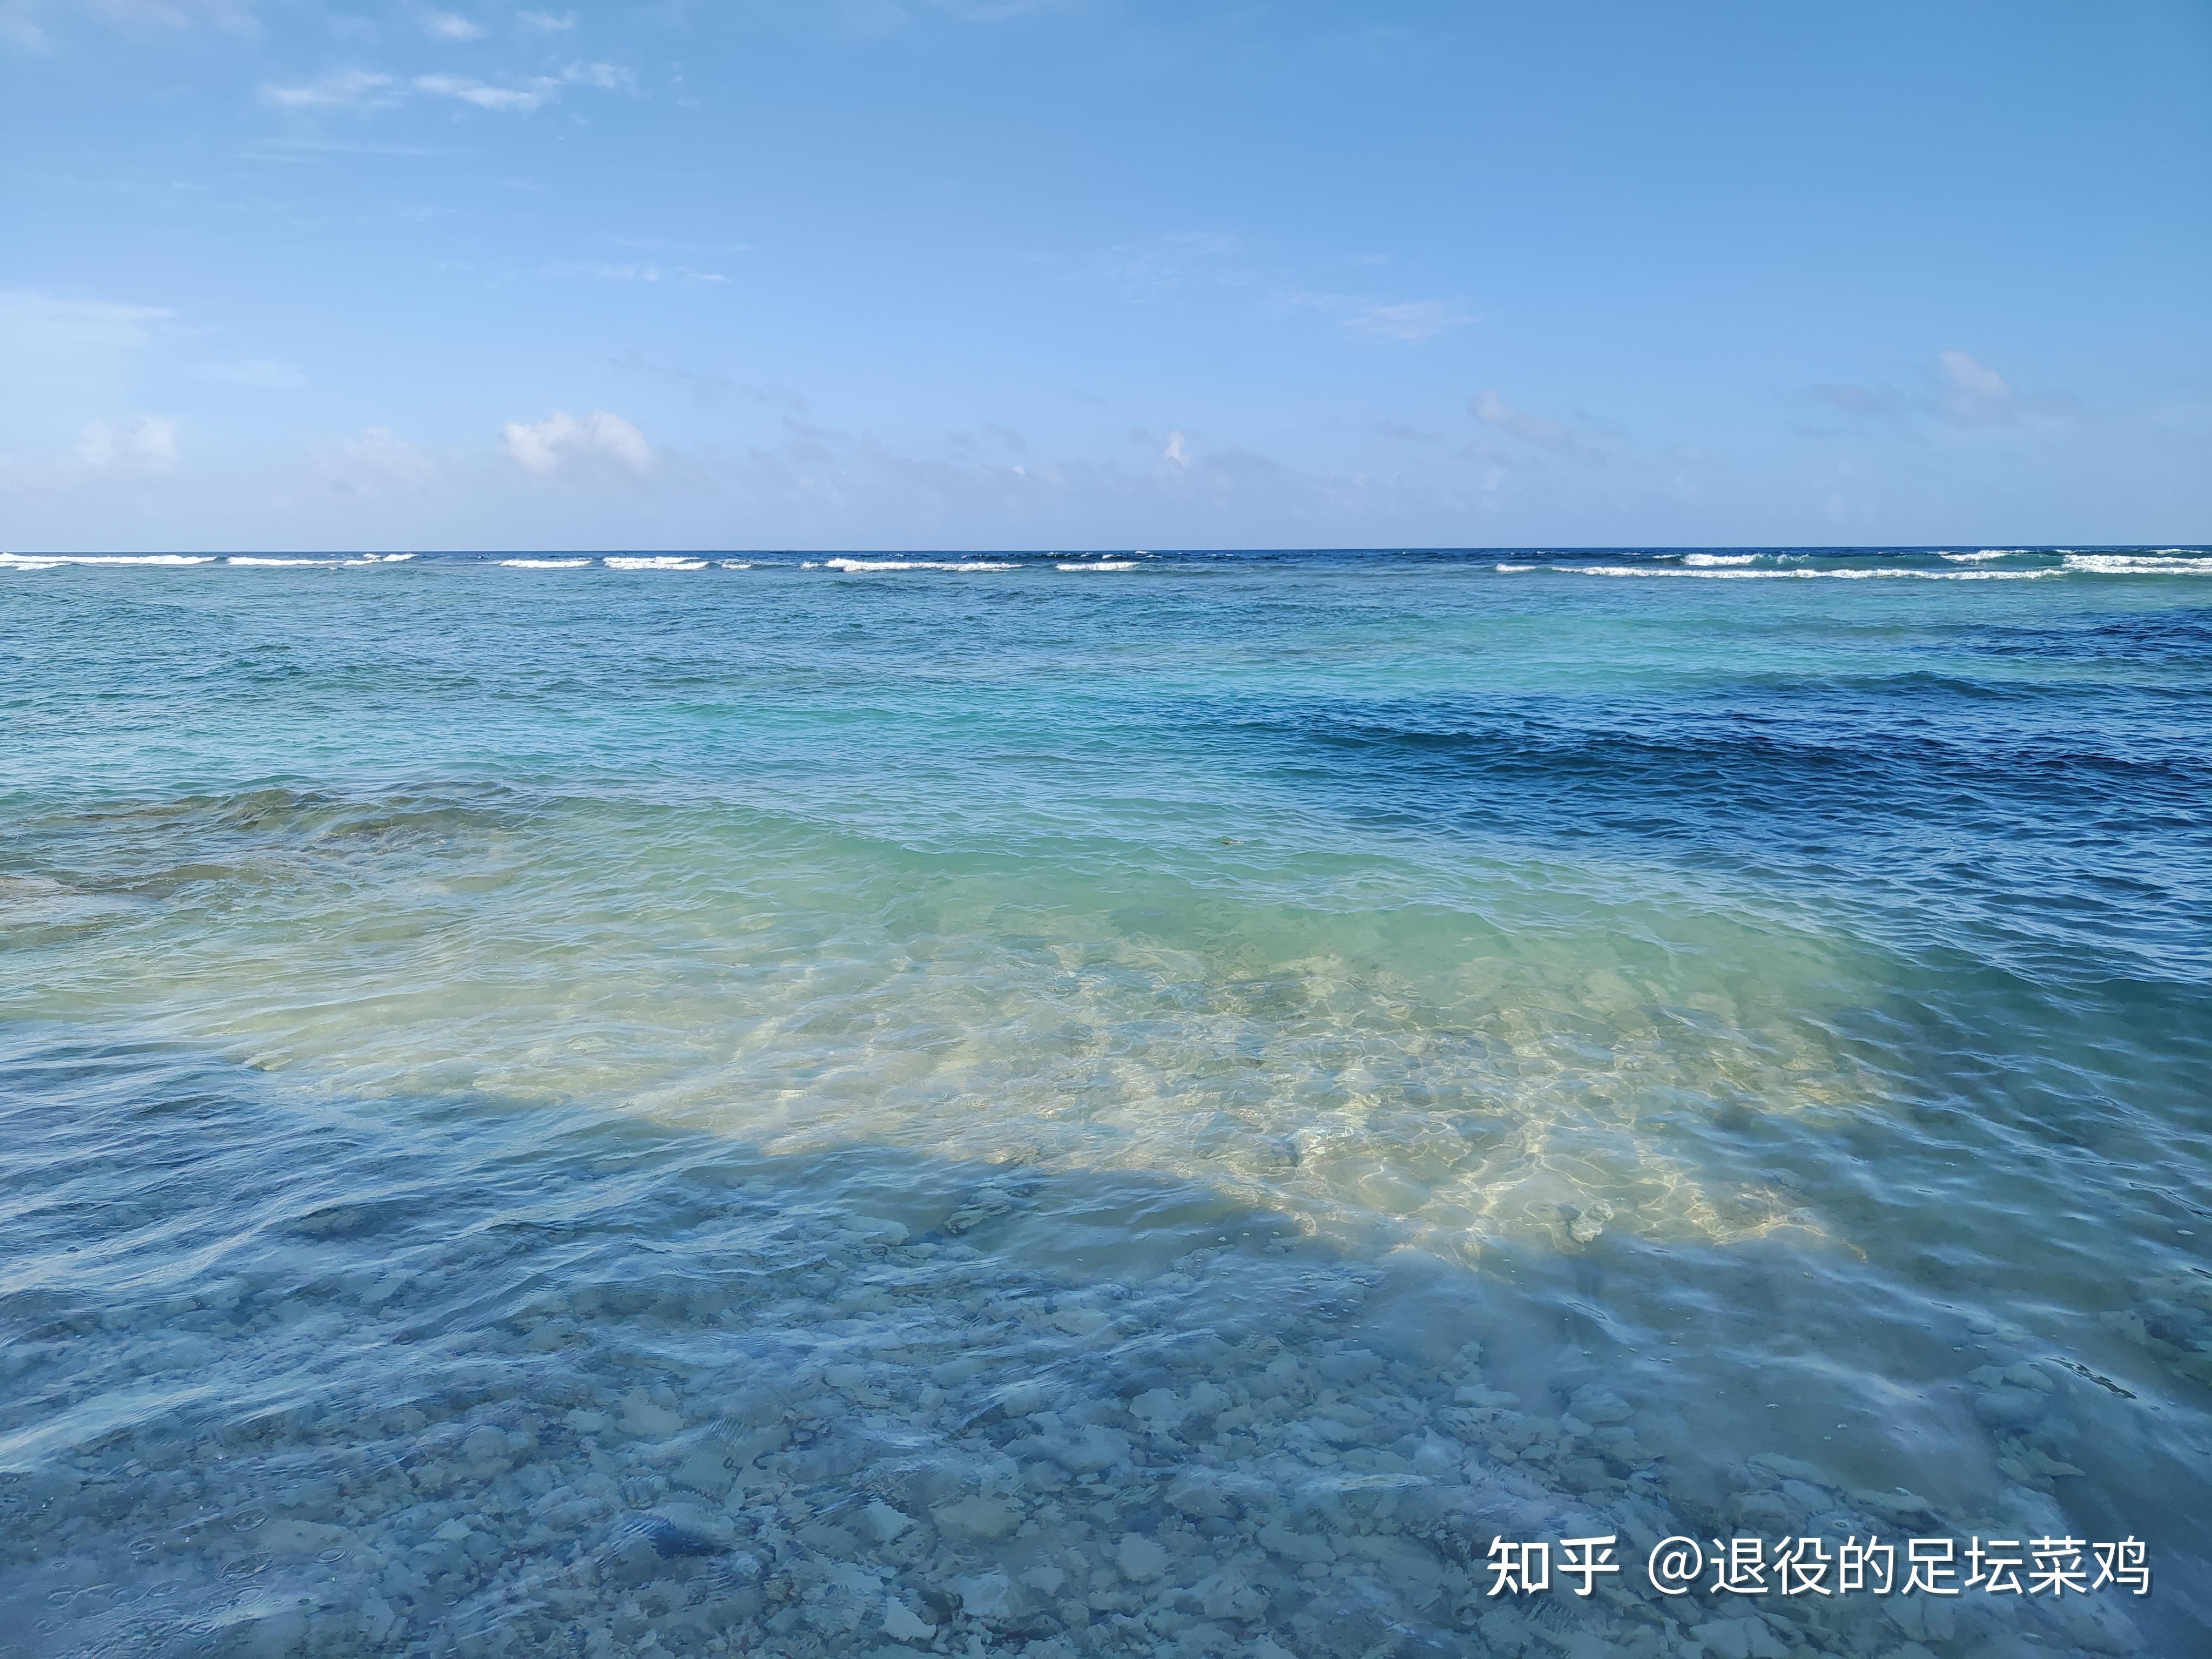 中国回应永兴岛部署导弹:相关岛礁部署早就存在_天下_新闻中心_长江网_cjn.cn